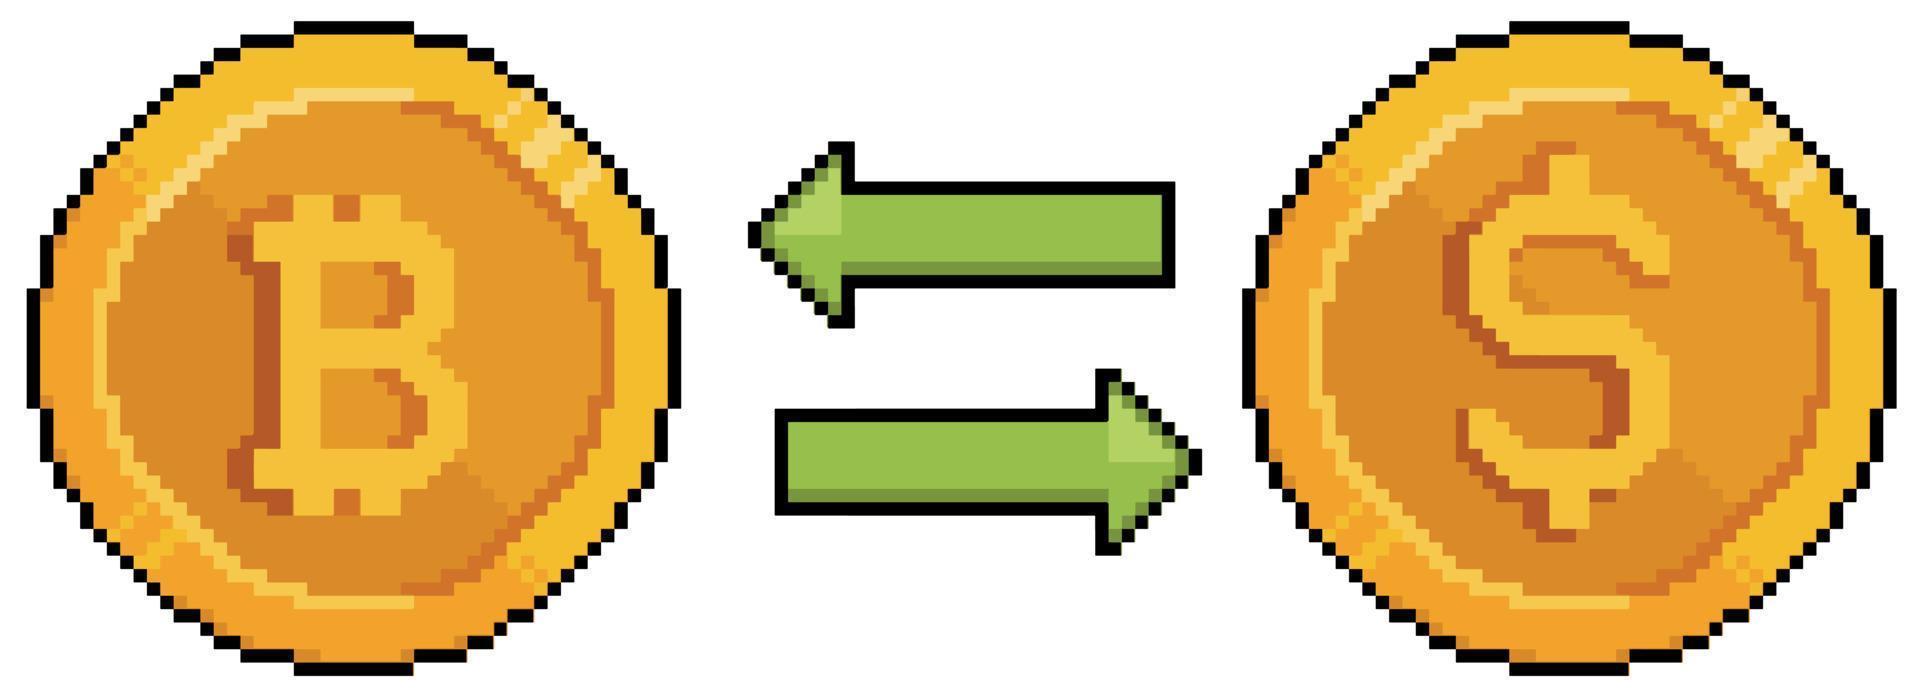 Pixelkunst bitcoin und dollar, bitcoin in dollar umwandeln. Investition und Finanzierung. 8-Bit-Spielsymbol auf weißem Hintergrund vektor